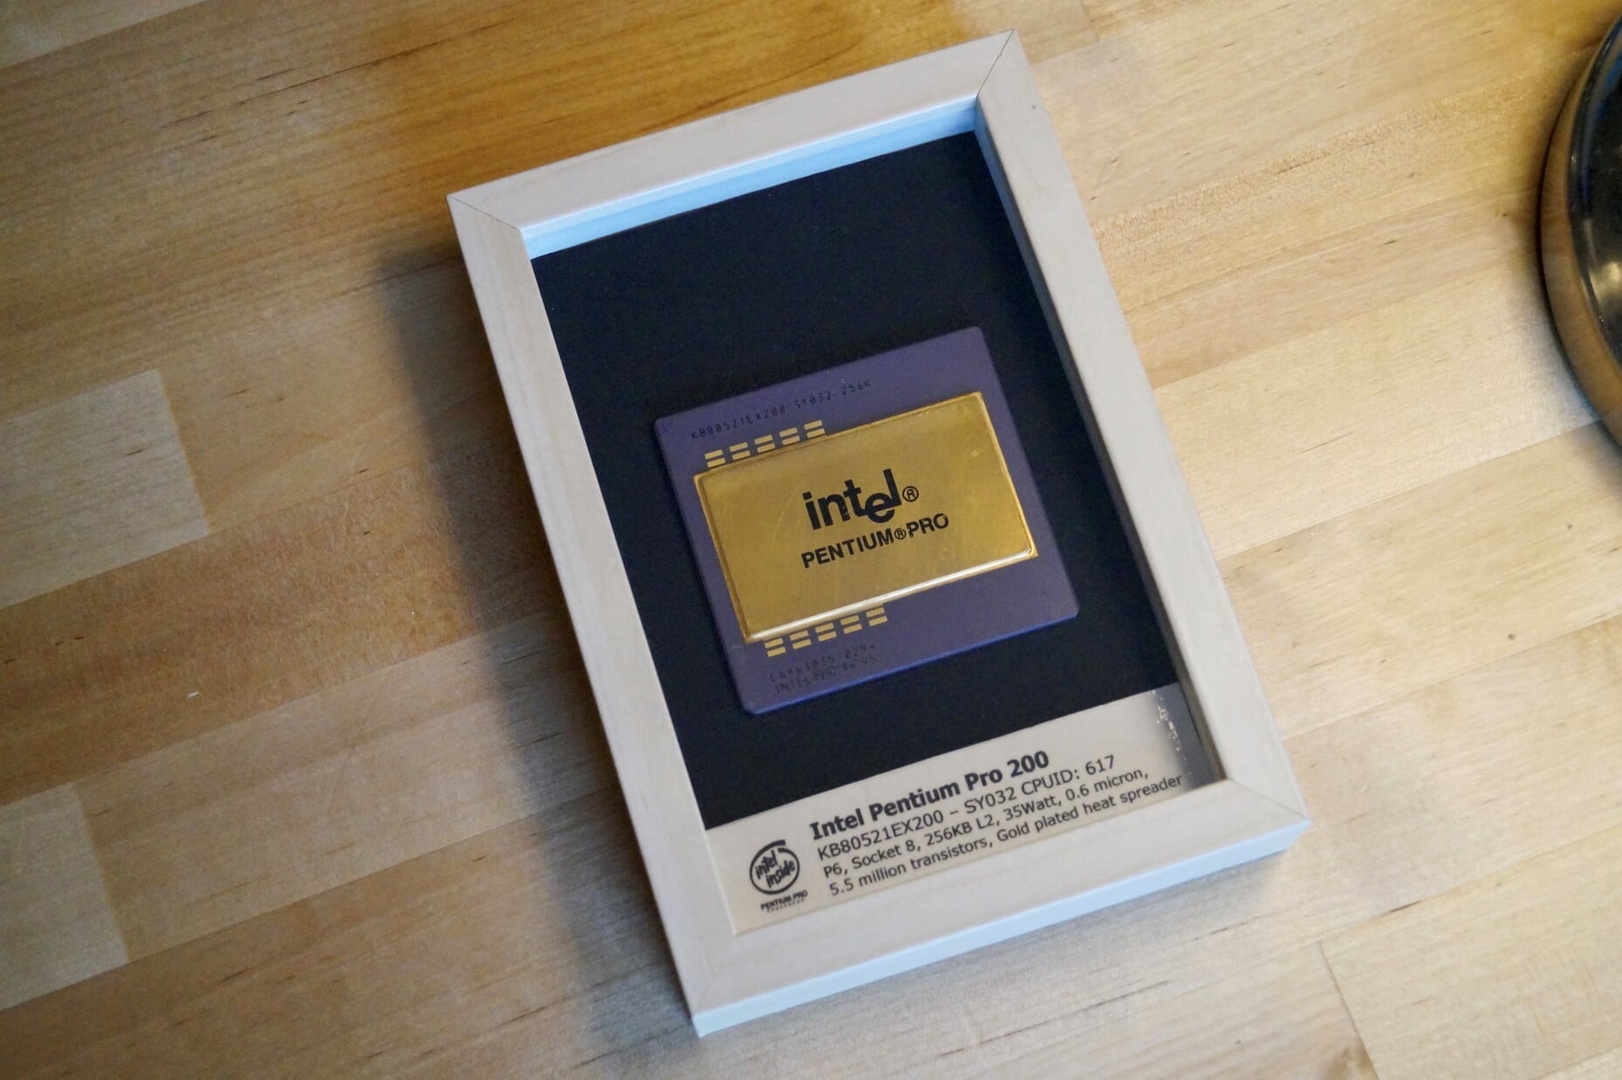 Salah satu hadiah kompetisi komunitas, Pro Pentium asli dalam bingkai